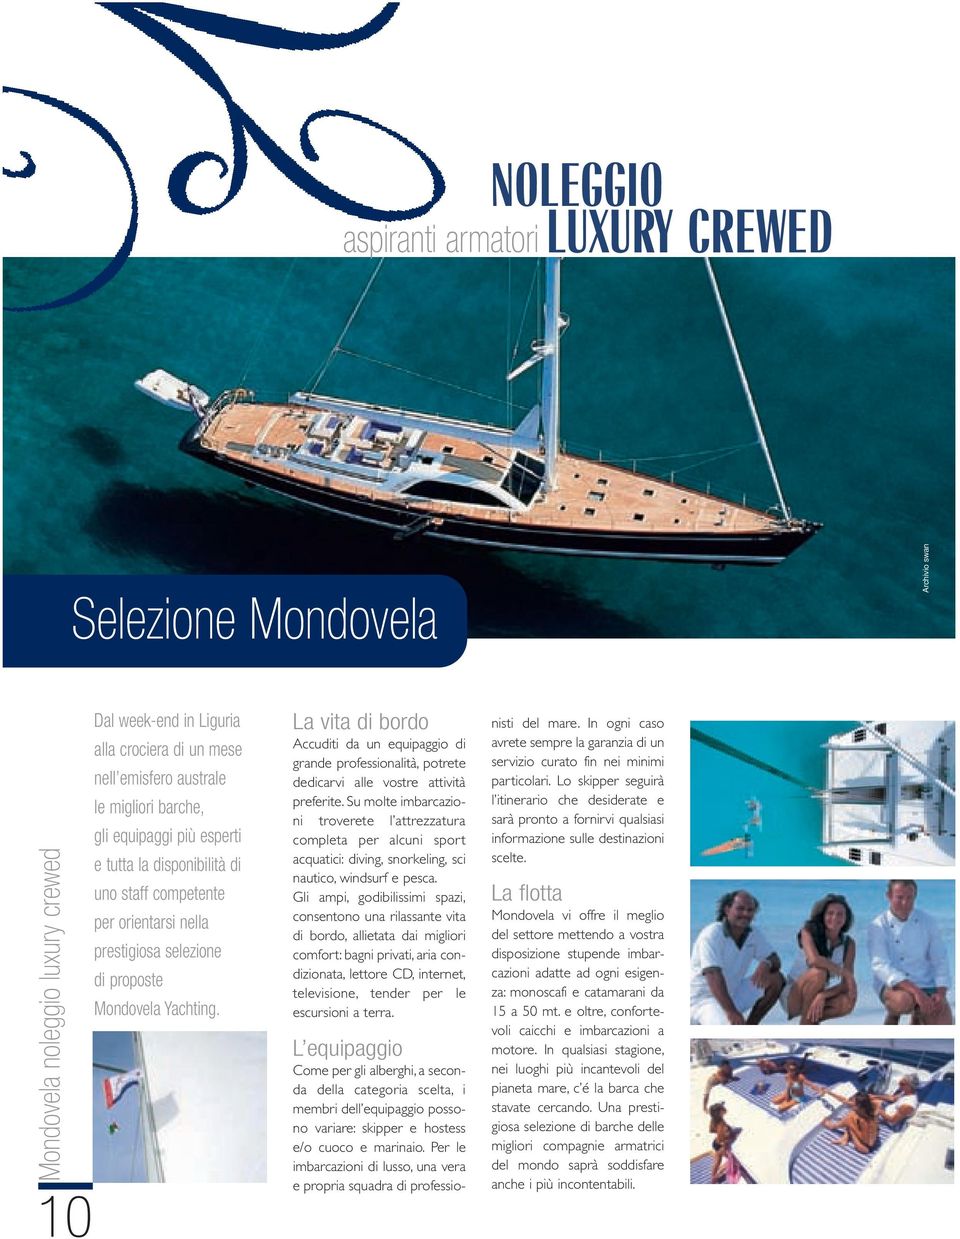 Liguria alla crociera di un mese nell emisfero australe le migliori barche, gli equipaggi più esperti e tutta la disponibilità di uno staff competente per orientarsi nella prestigiosa selezione di